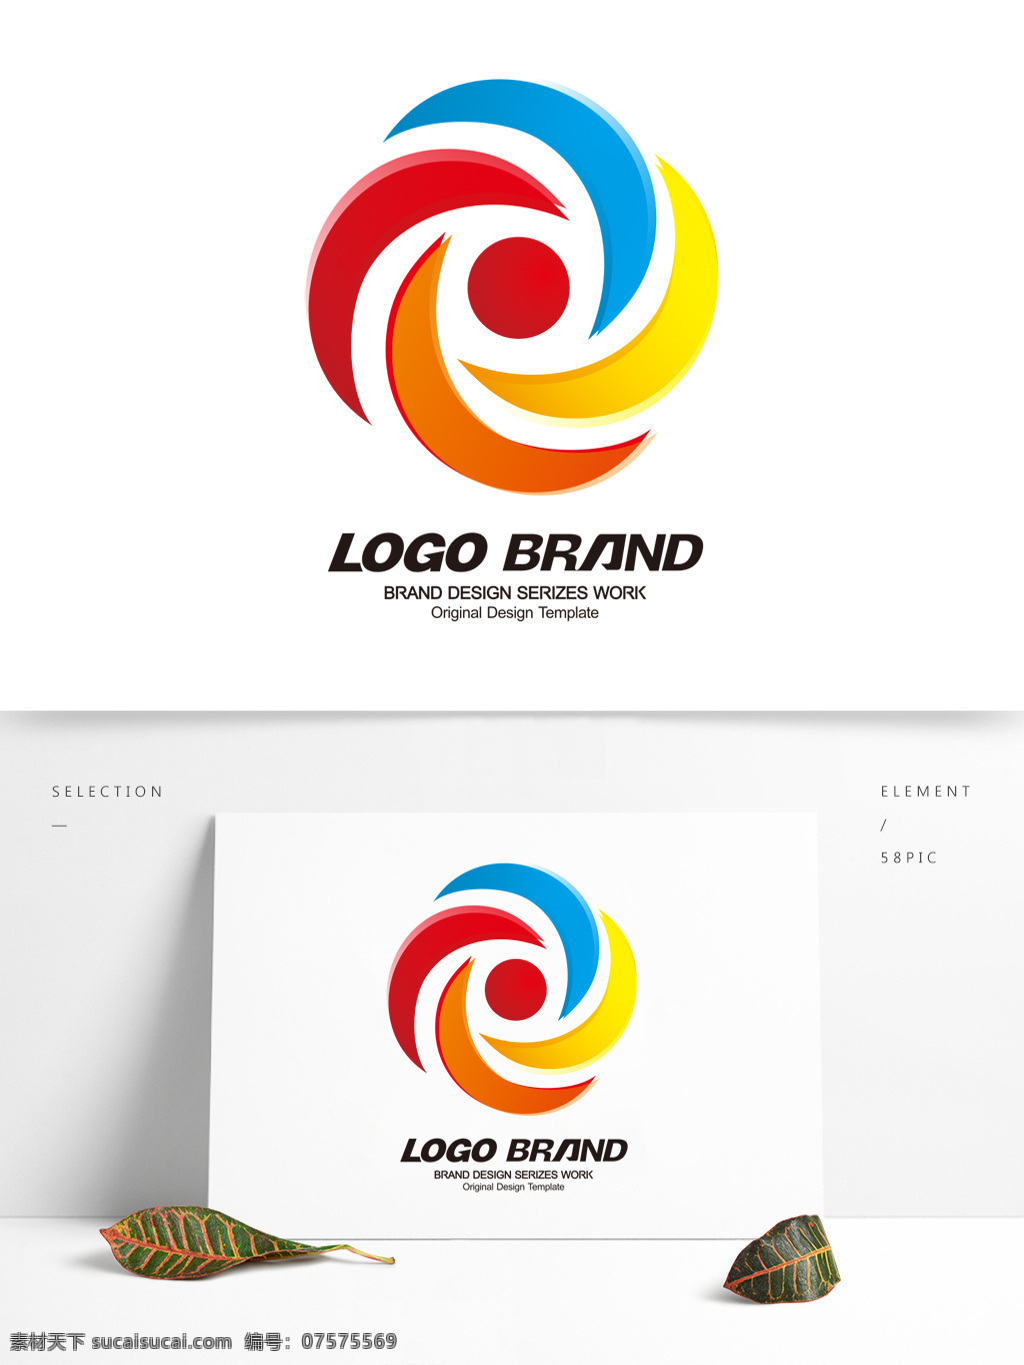 创意 现代 多彩 线条 公司 标志 logo j 字母 标志设计 t 科技 公司标志设计 企业 会徽标志设计 企业标志设计